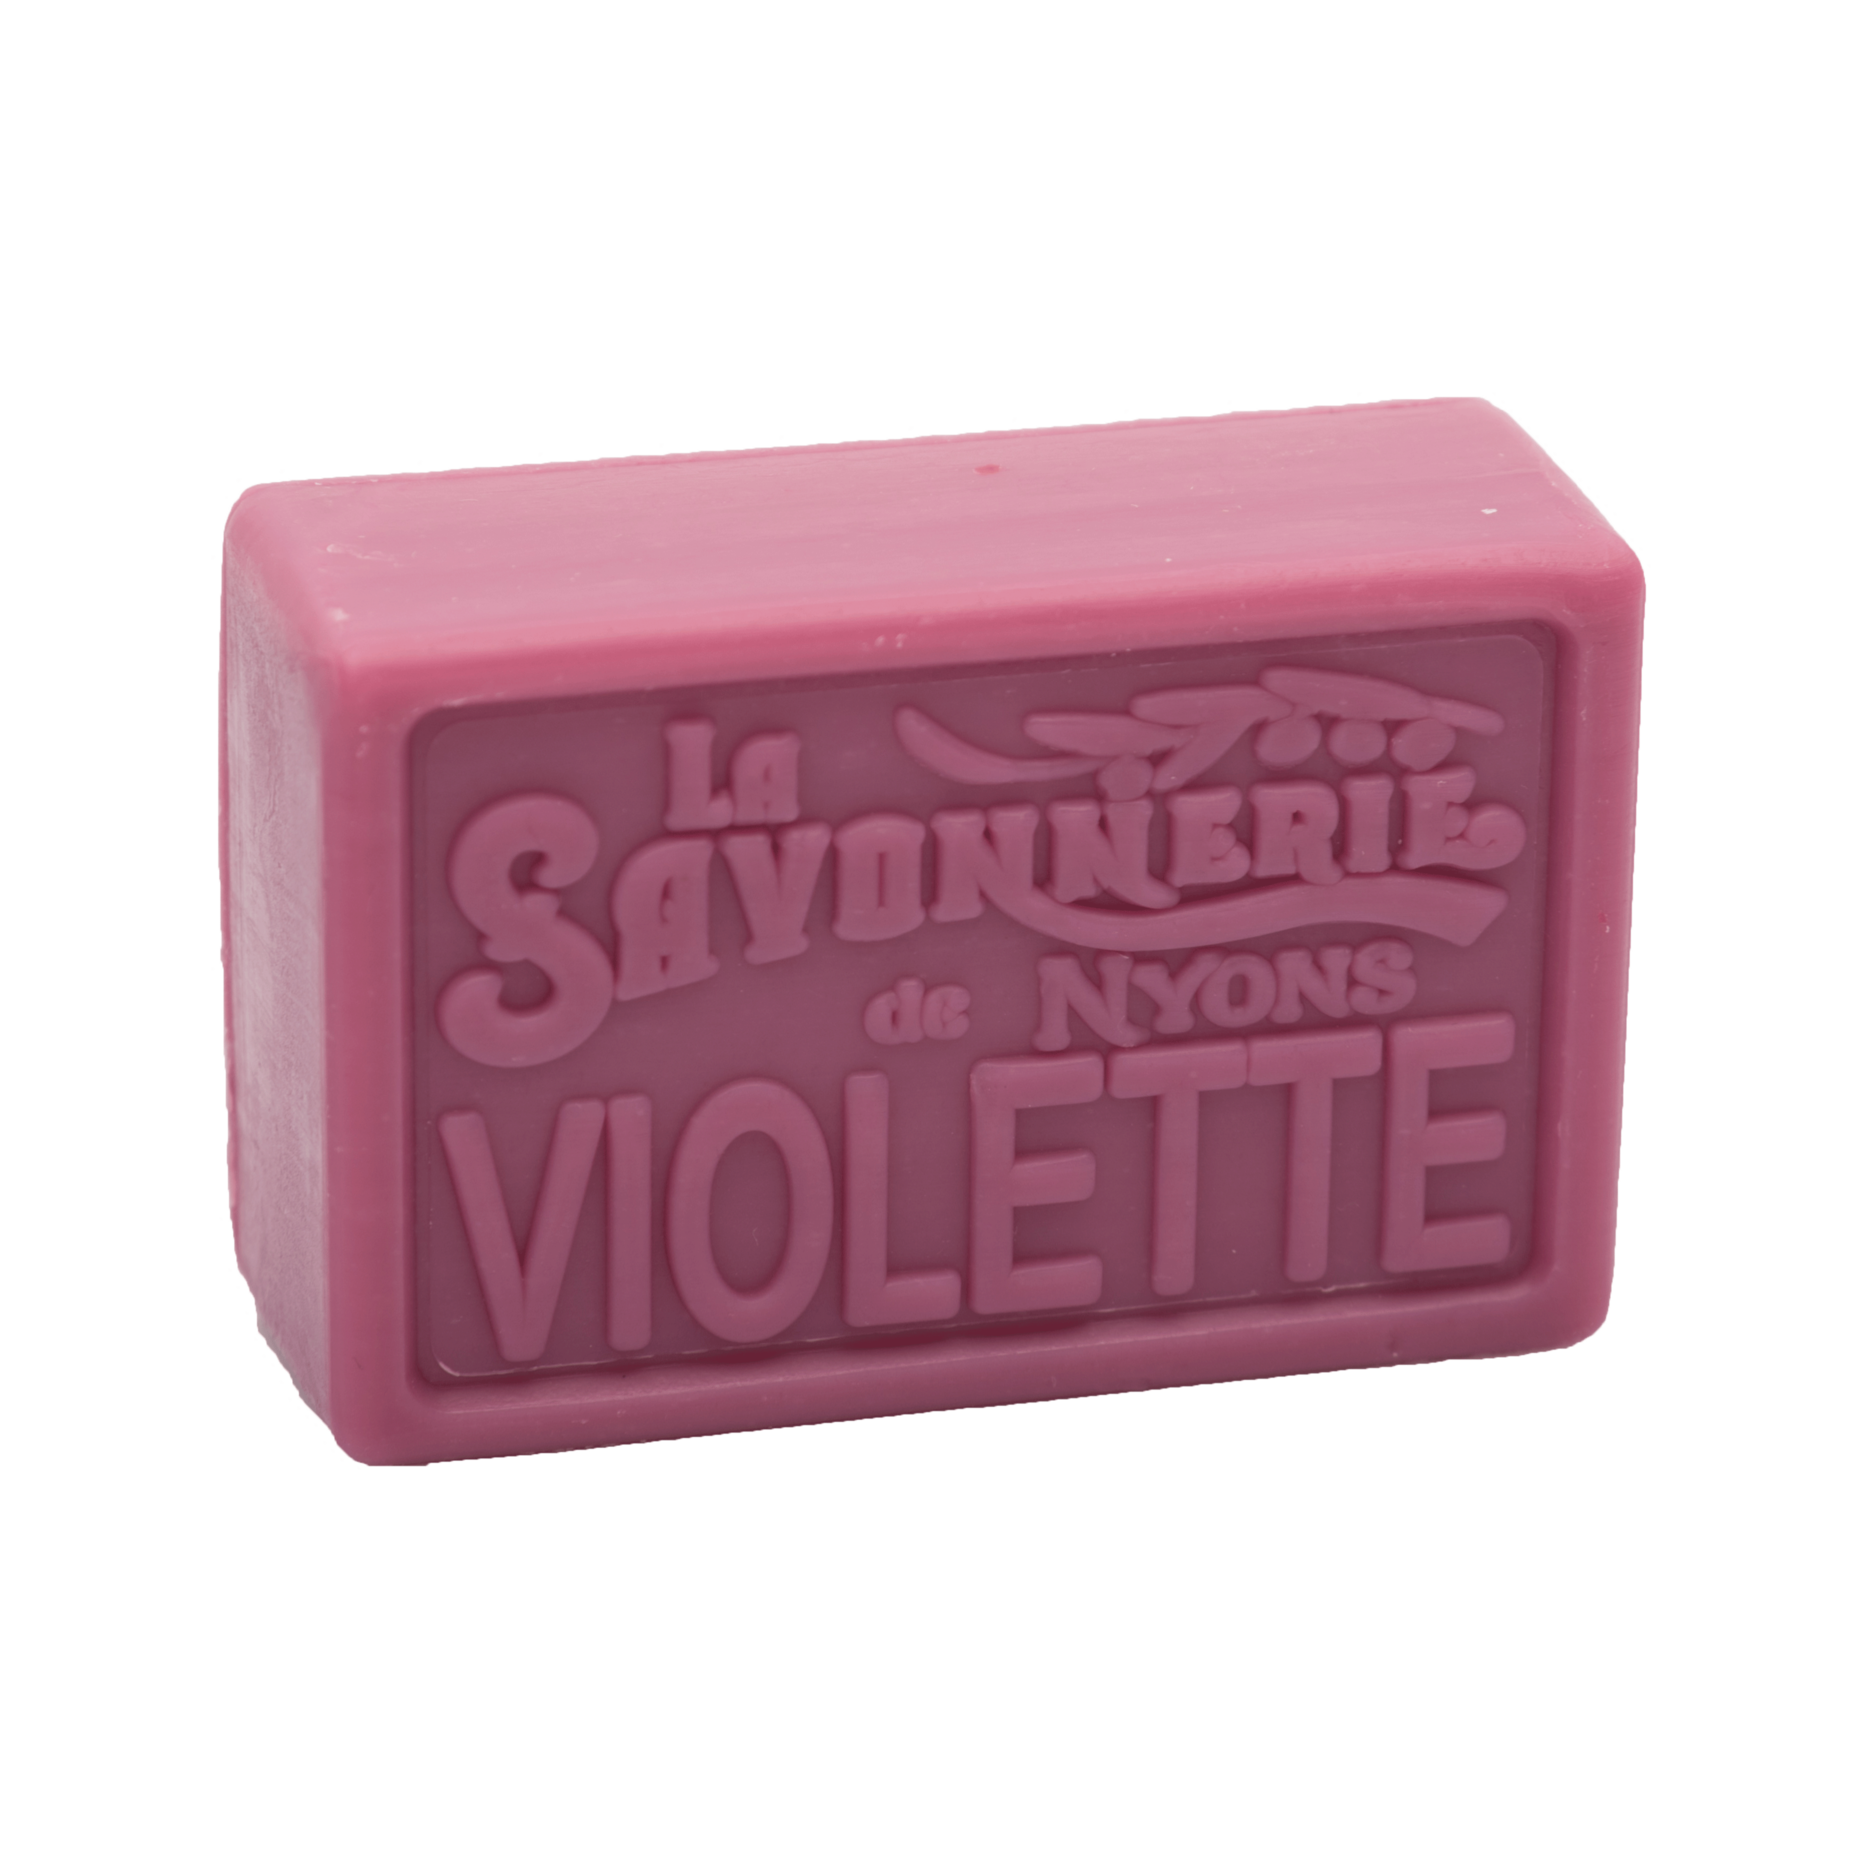 Purple bar of soap reading La Savonnerie de Nyons Violette.